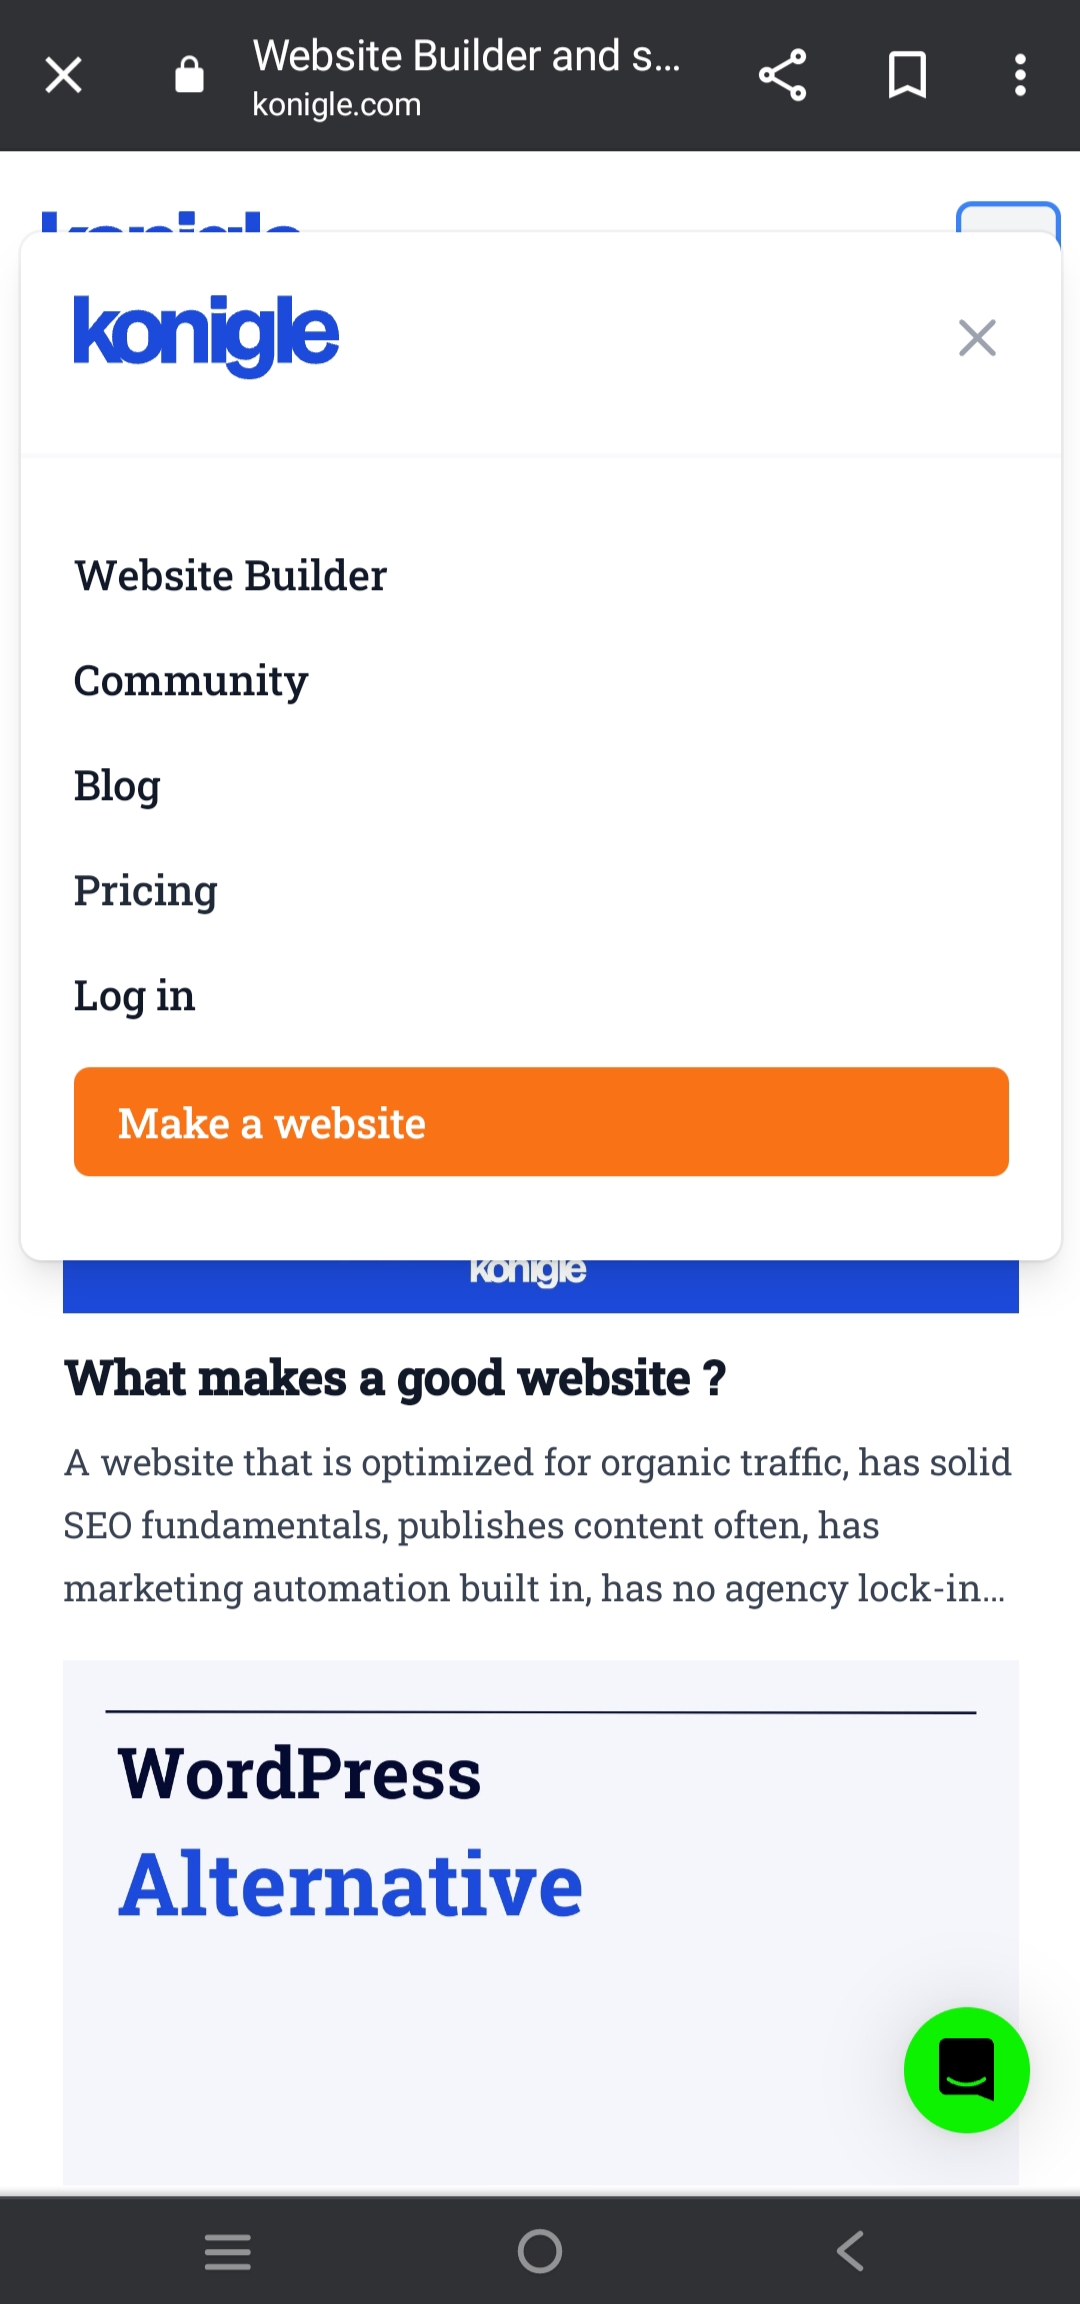 konigle website par "Make a website" button